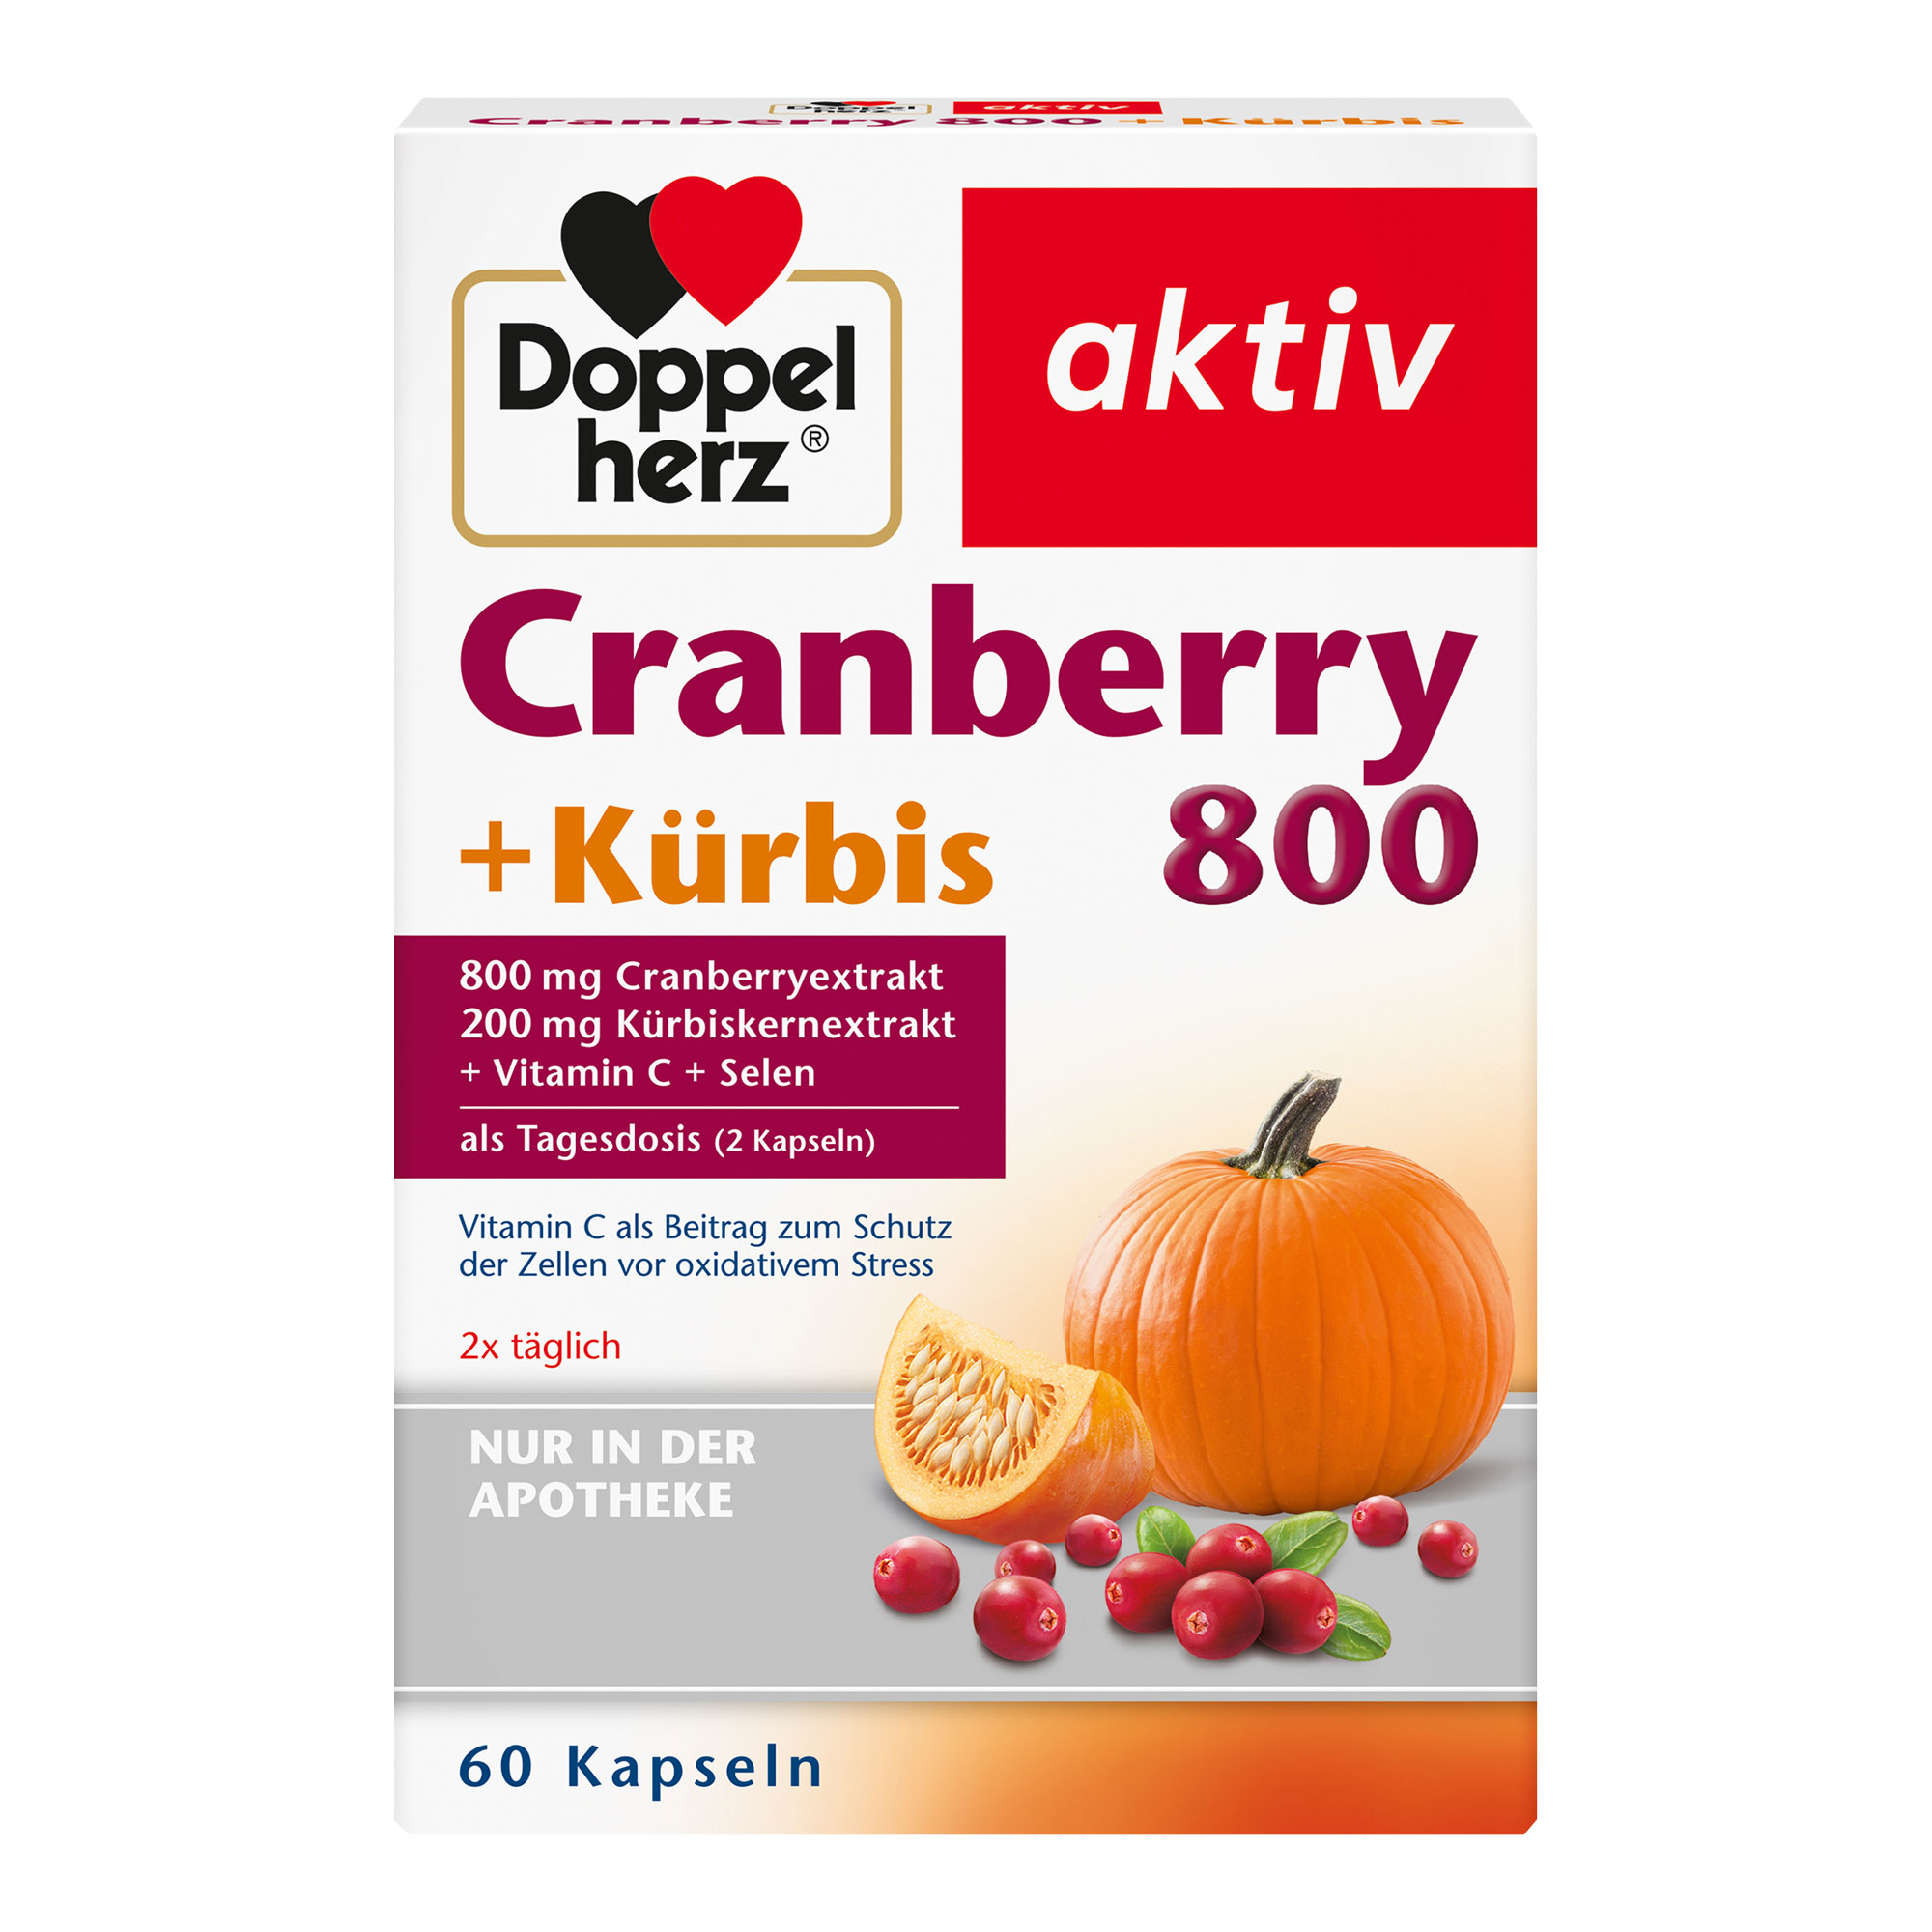 Nahrungsergänzungsmittel mit Cranberryextrakt, Kürbiskernextrakt, Vitamin C und Selen.